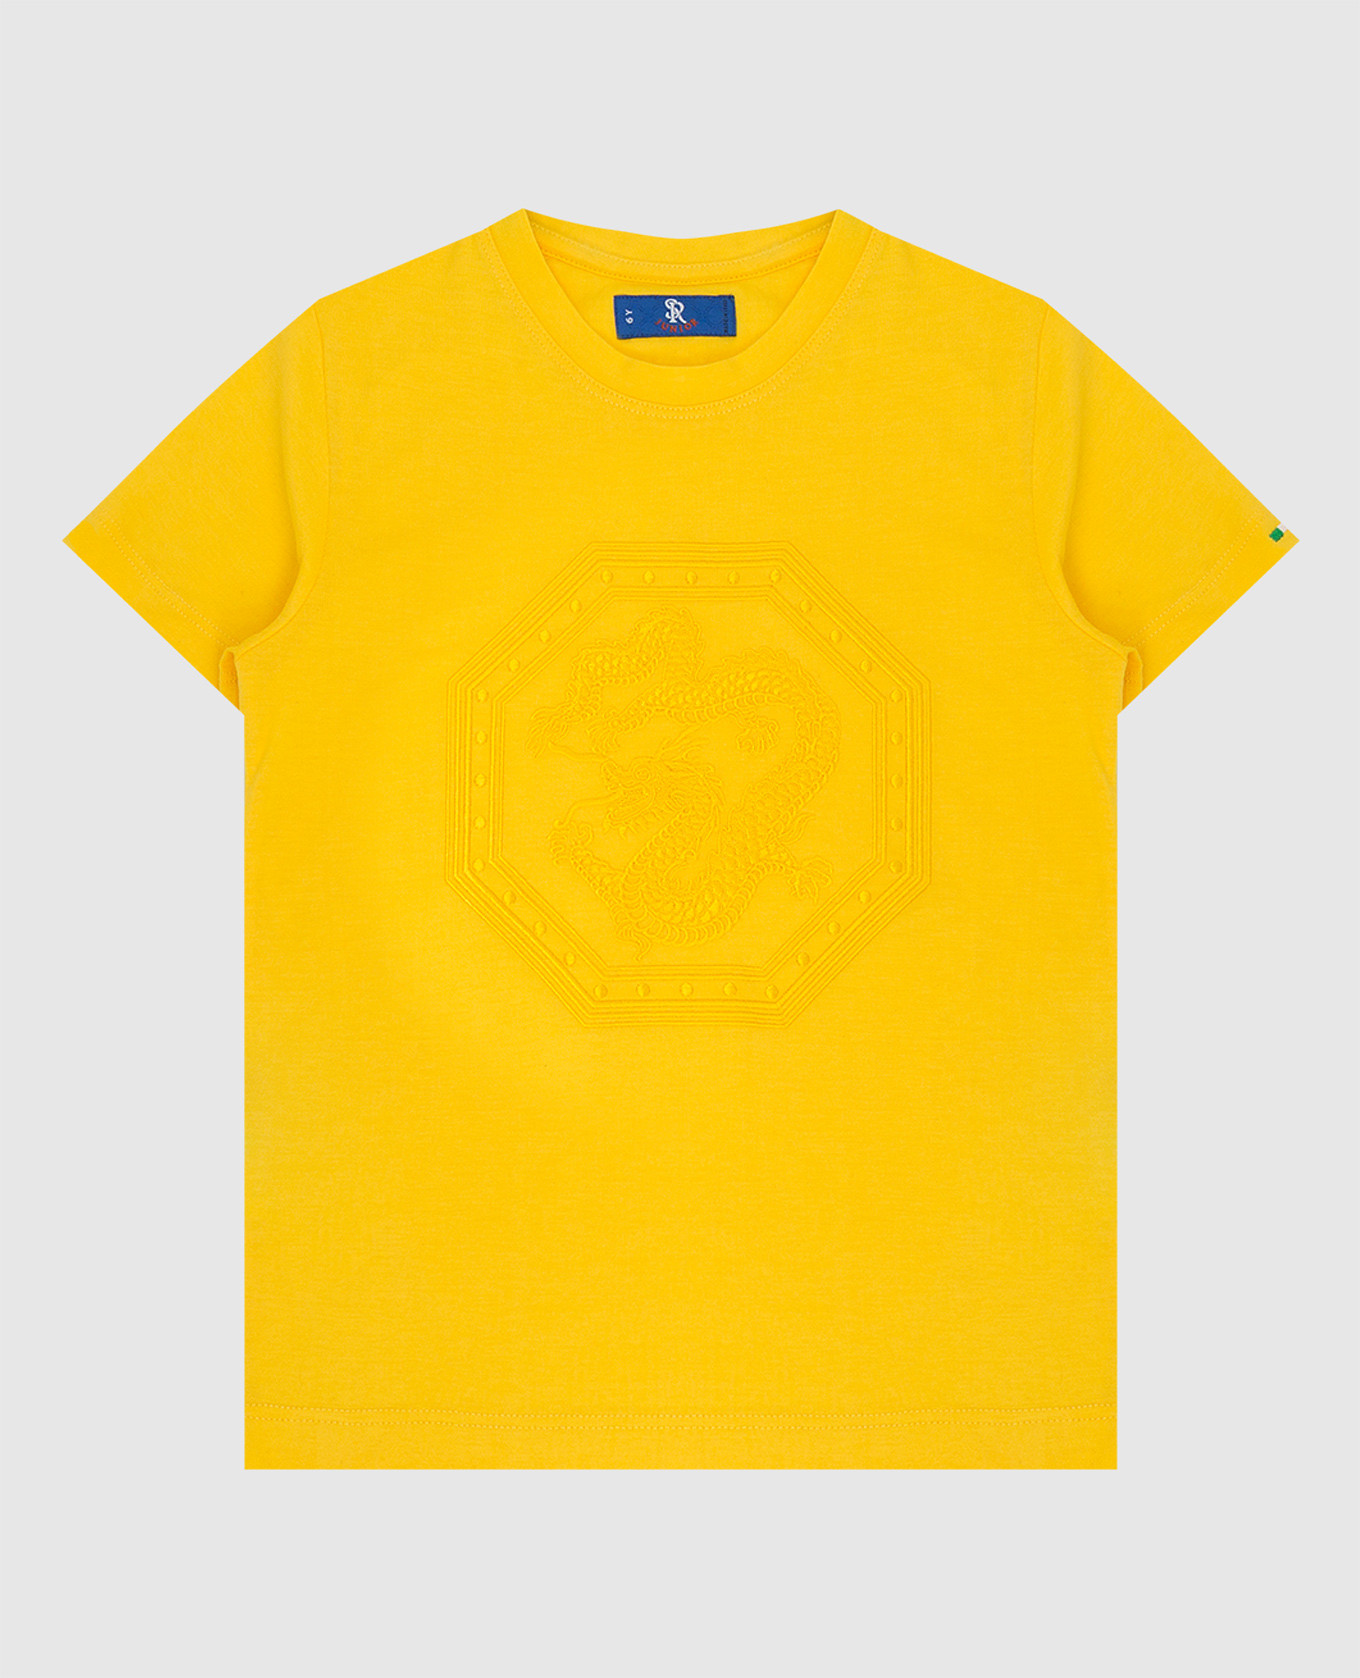 Детская желтая футболка с вышивкой